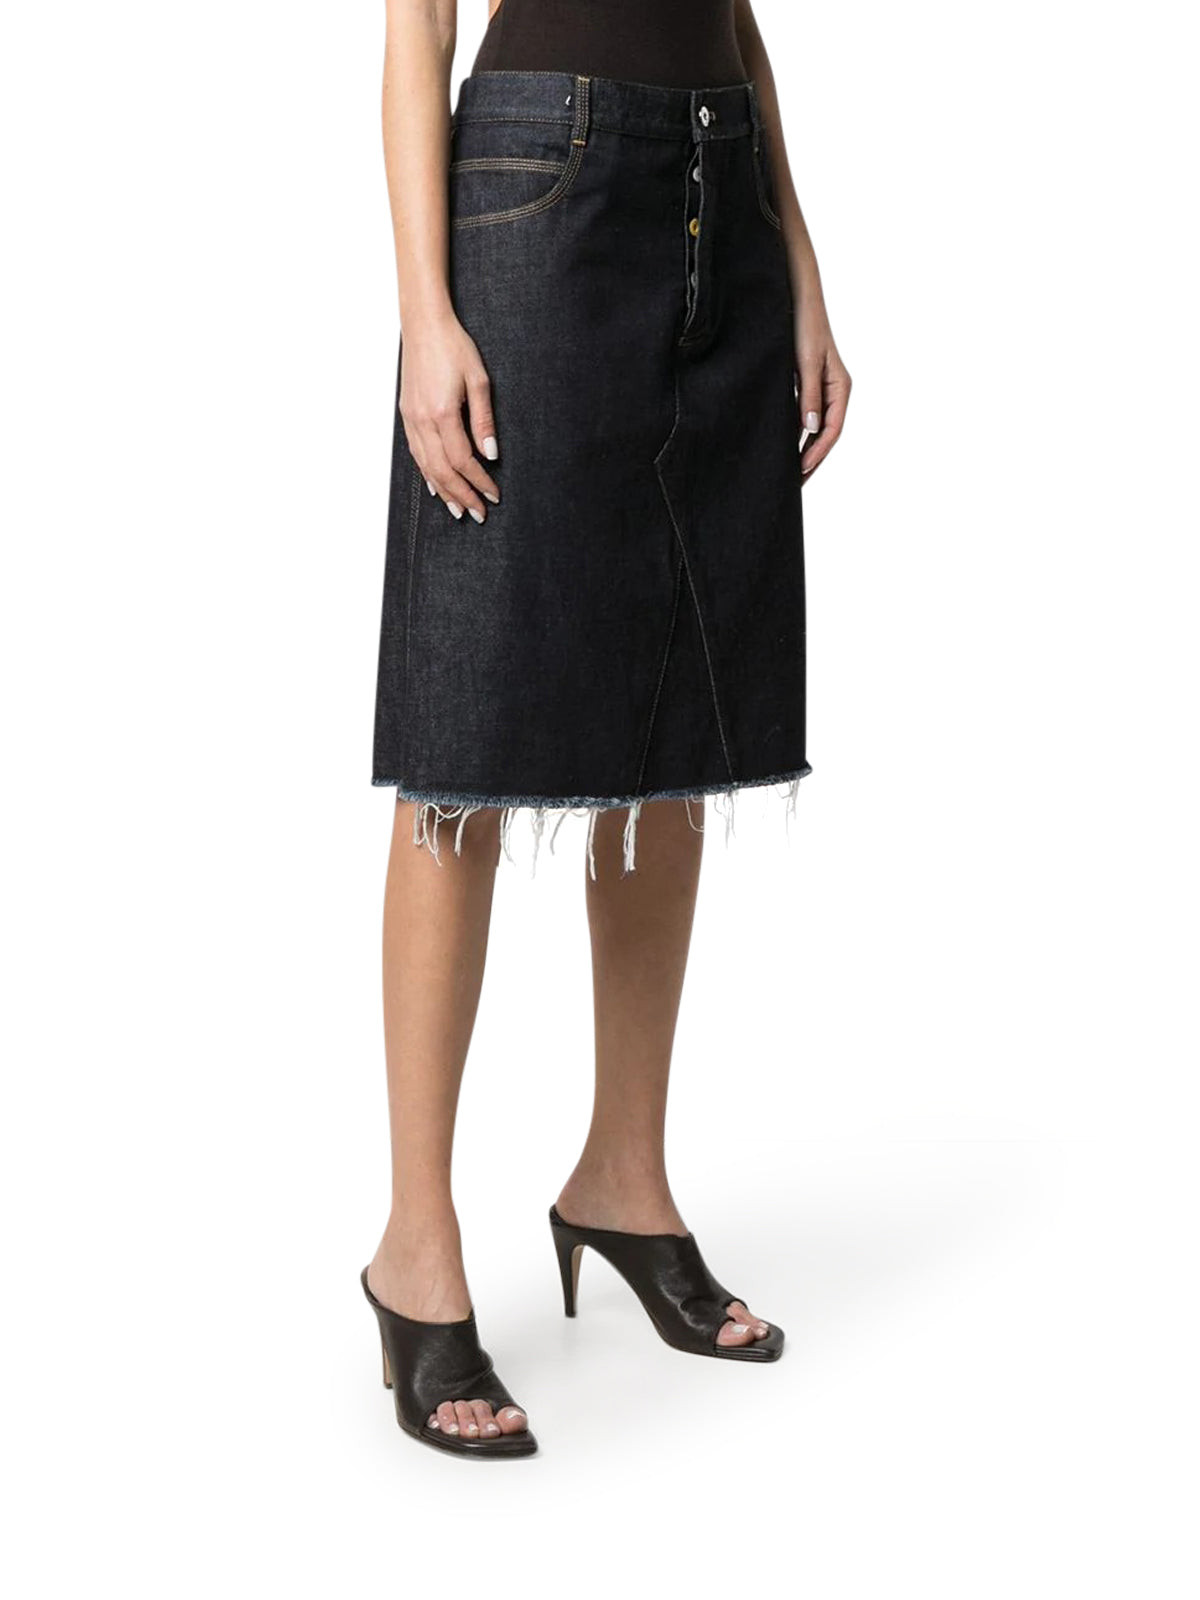 A-line mid-length skirt